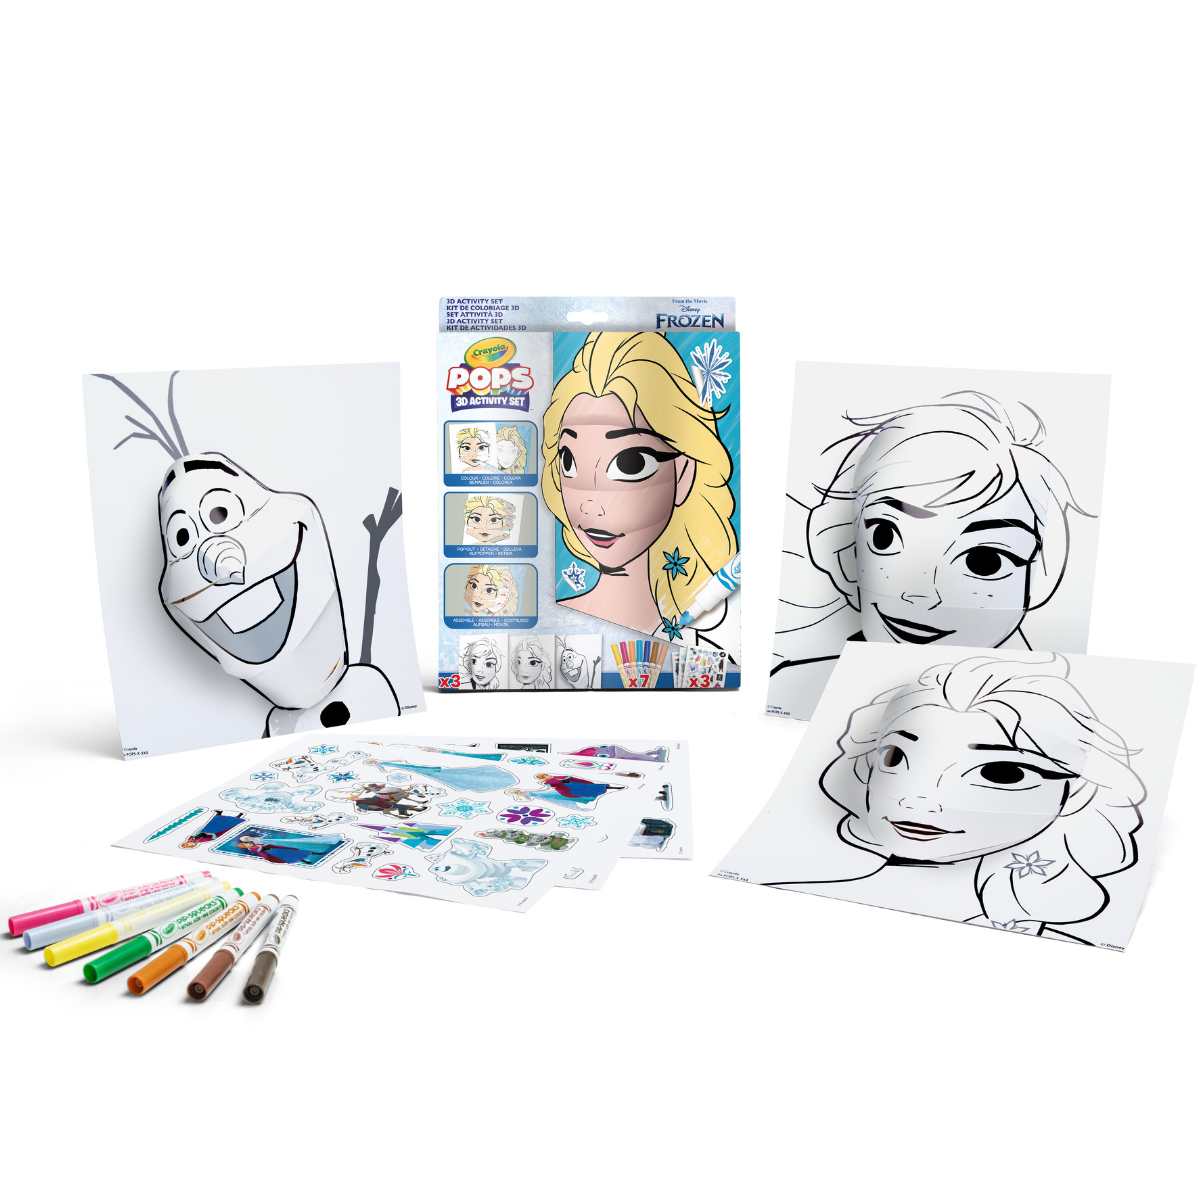 Crayola pops - set attività 3d, per colorare e creare disegni in 3d, attività creativa e regalo per bambini, soggetto disney frozen, da 6 anni - CRAYOLA, DISNEY PRINCESS